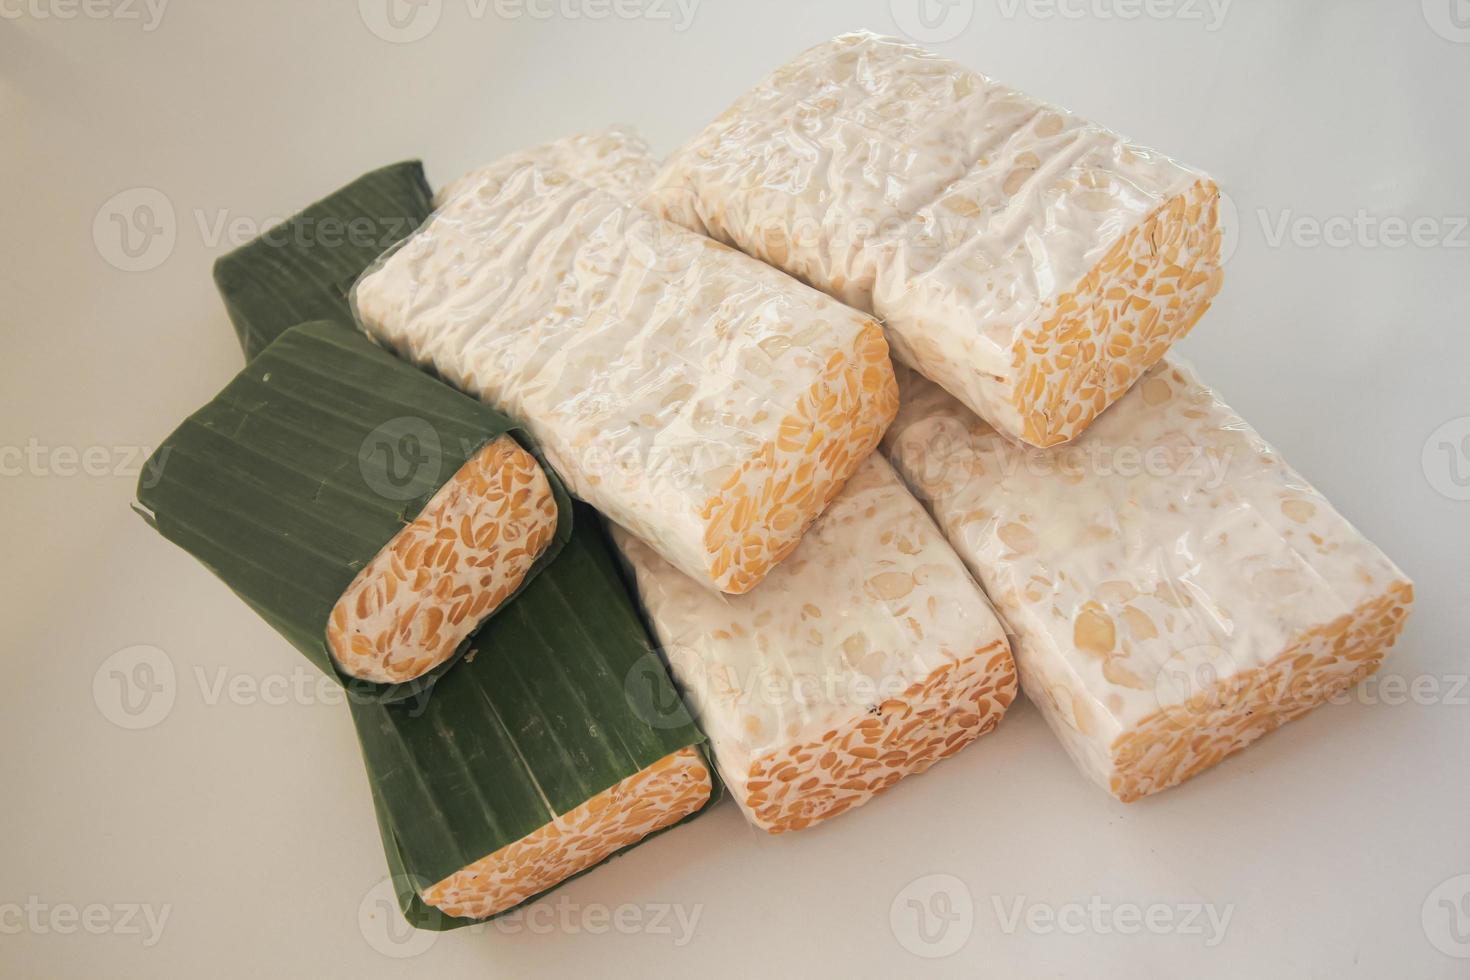 tempeh o tempe è indonesiano tradizionale cibo fatto a partire dal fermentato semi di soia. essi siamo generalmente avvolto nel Banana le foglie foto